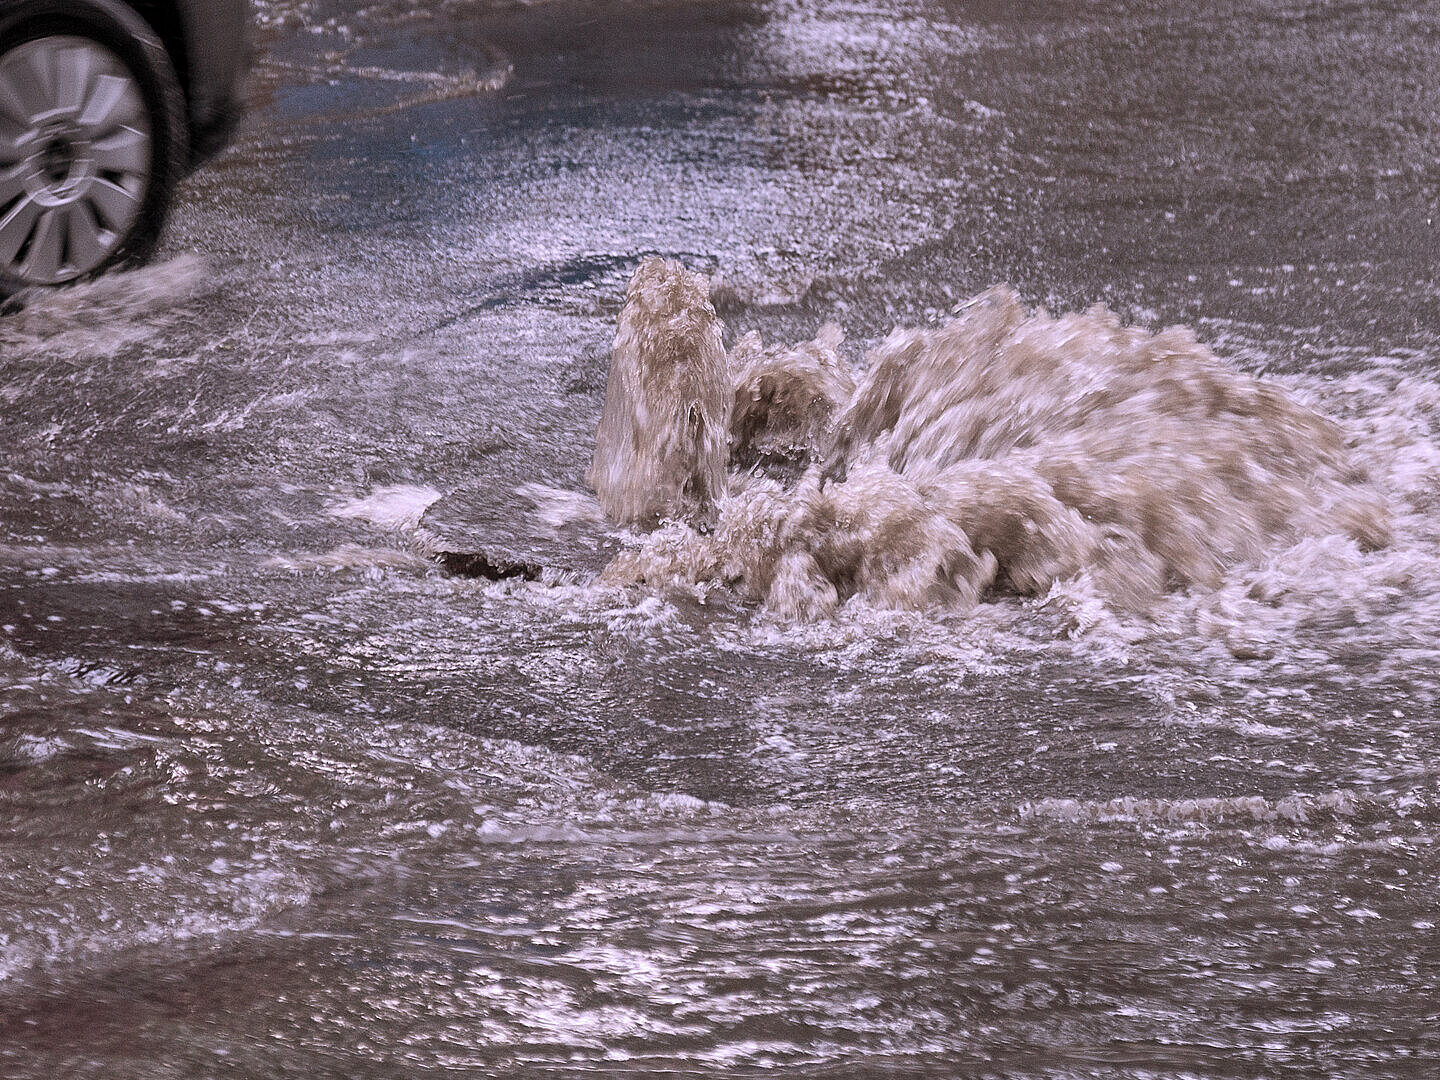 Wasser quillt aus dem Gullideckel infolge einer Kanalüberlastung durch Starkregen.